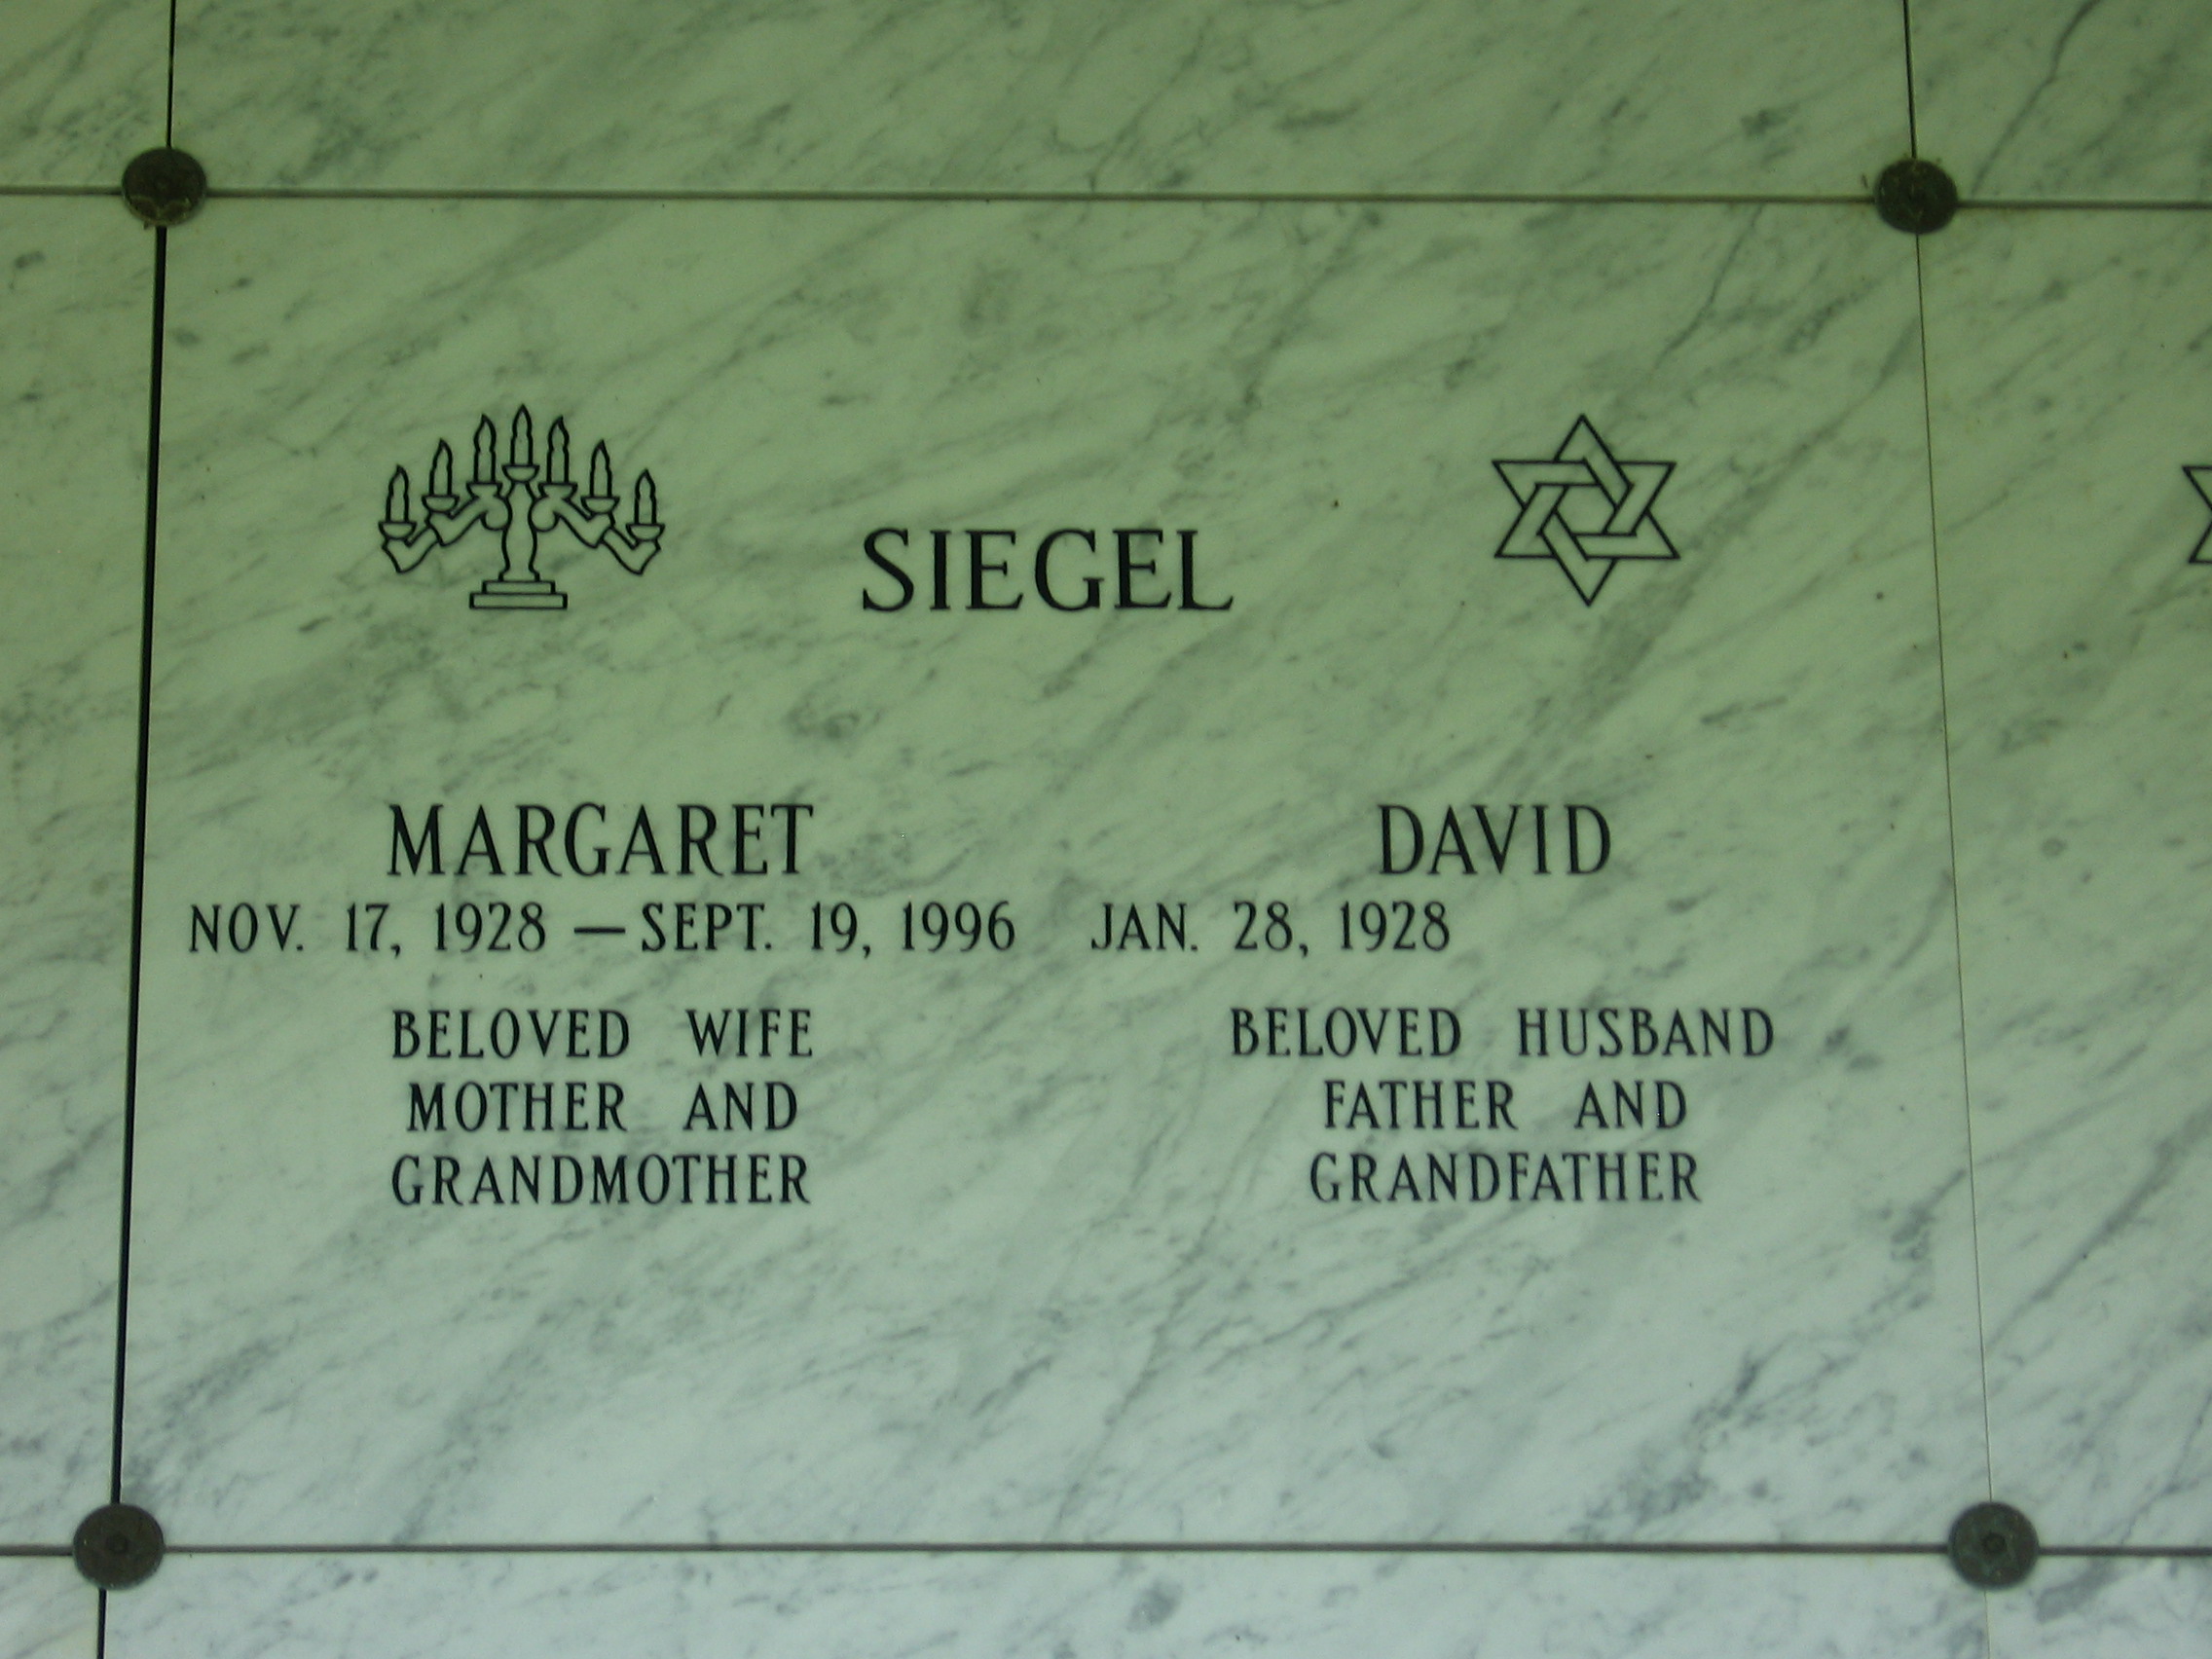 Margaret Siegel